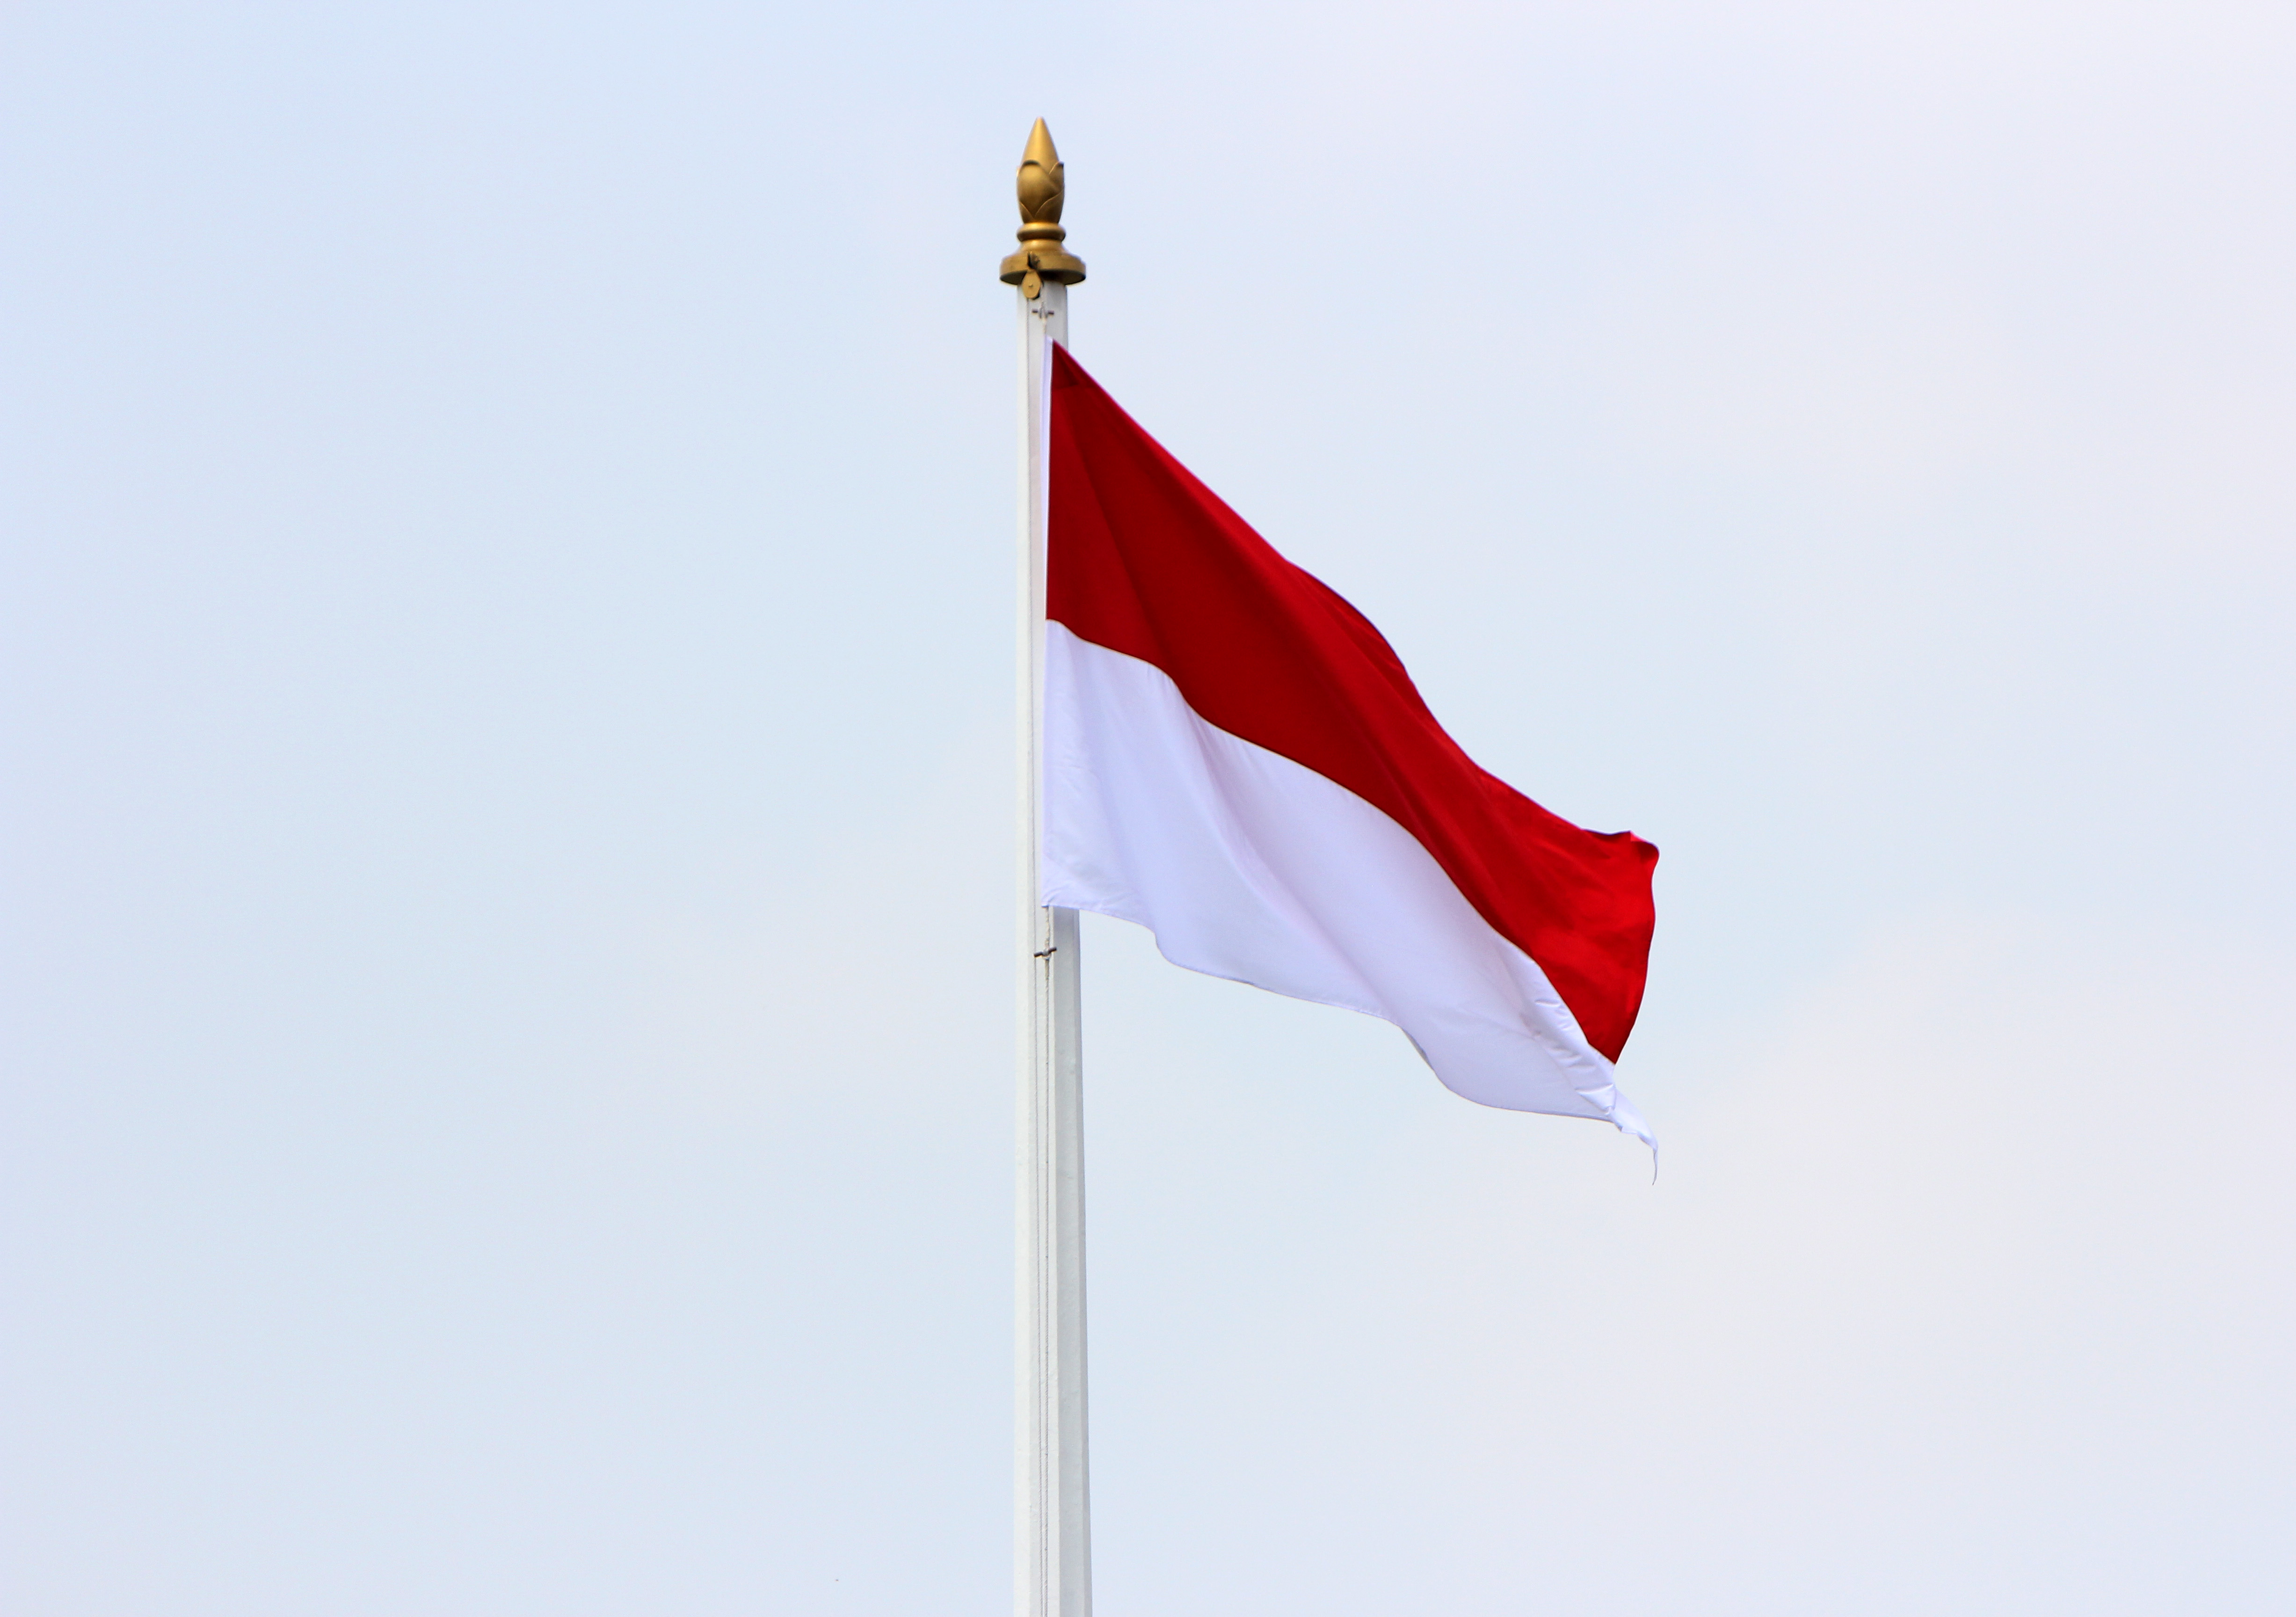 Bendera Korea Kumpulan GambarJual Beli Grosir Bendera Indonesia